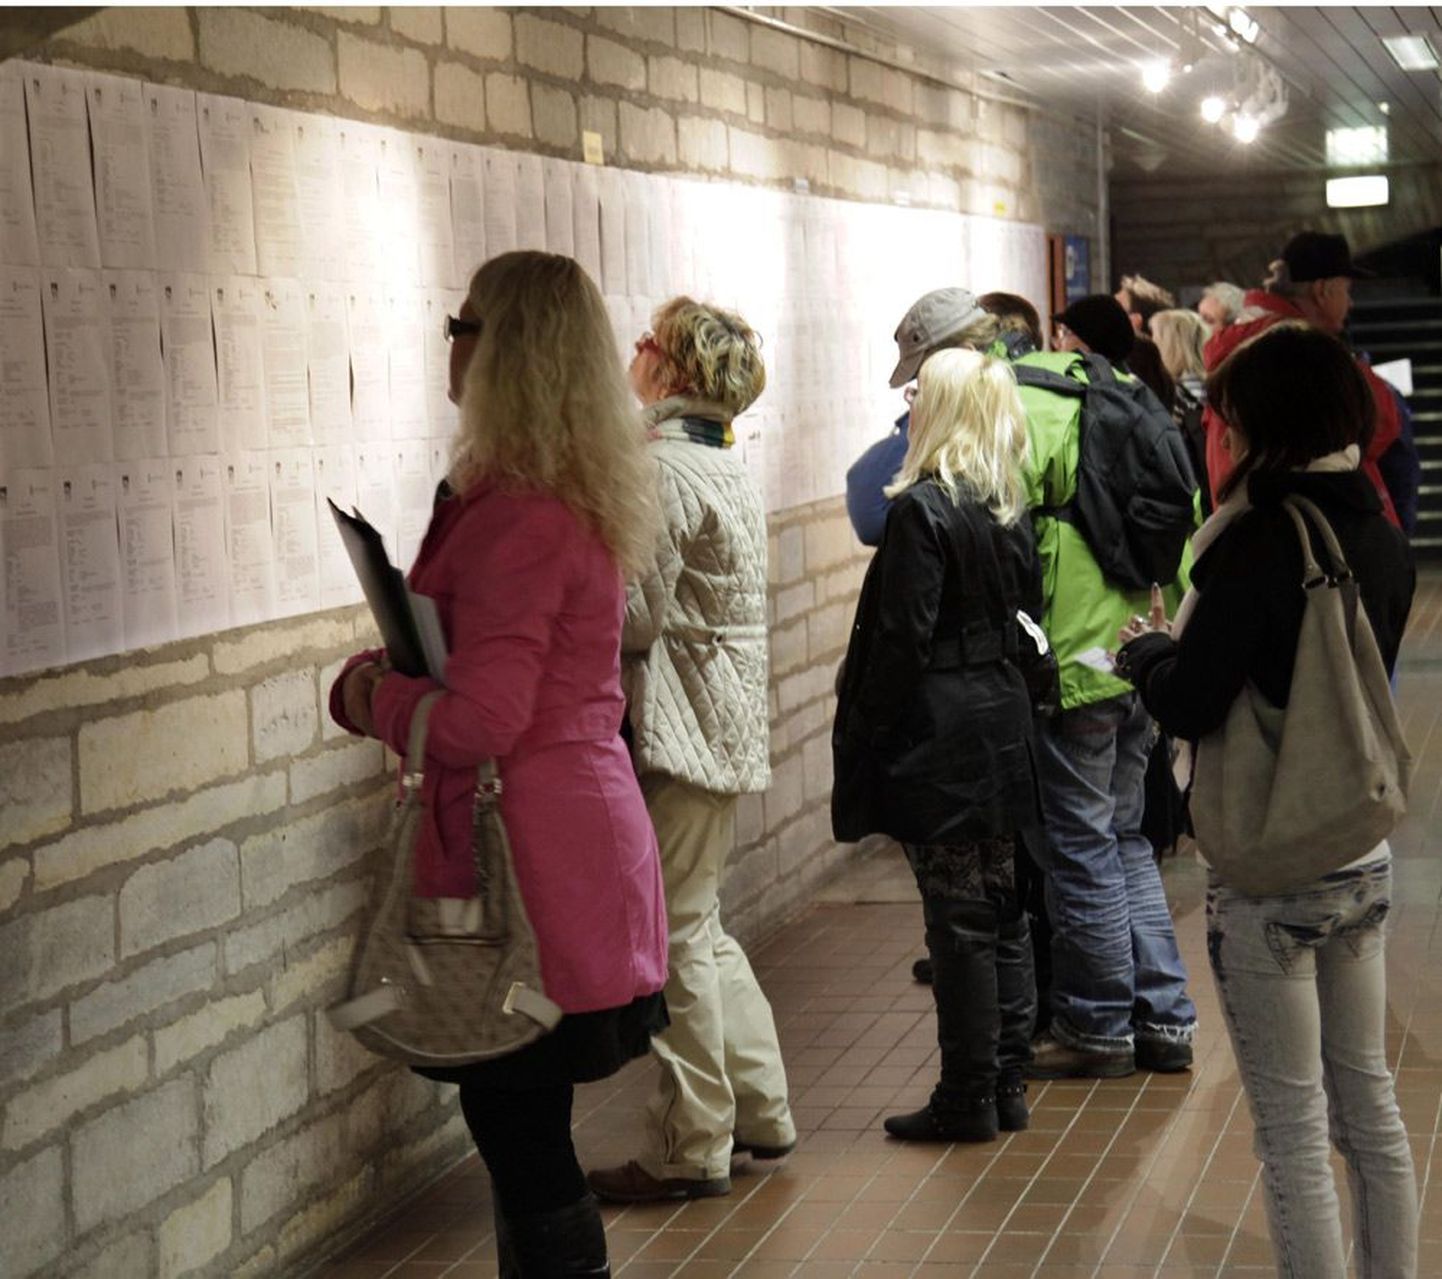 Tallinnas rahvusraamatukogus sagis eile tööpakkujate vahel sadu inimesi, kõigepealt tutvuti aga fuajees välja pandud töökuulutustega.